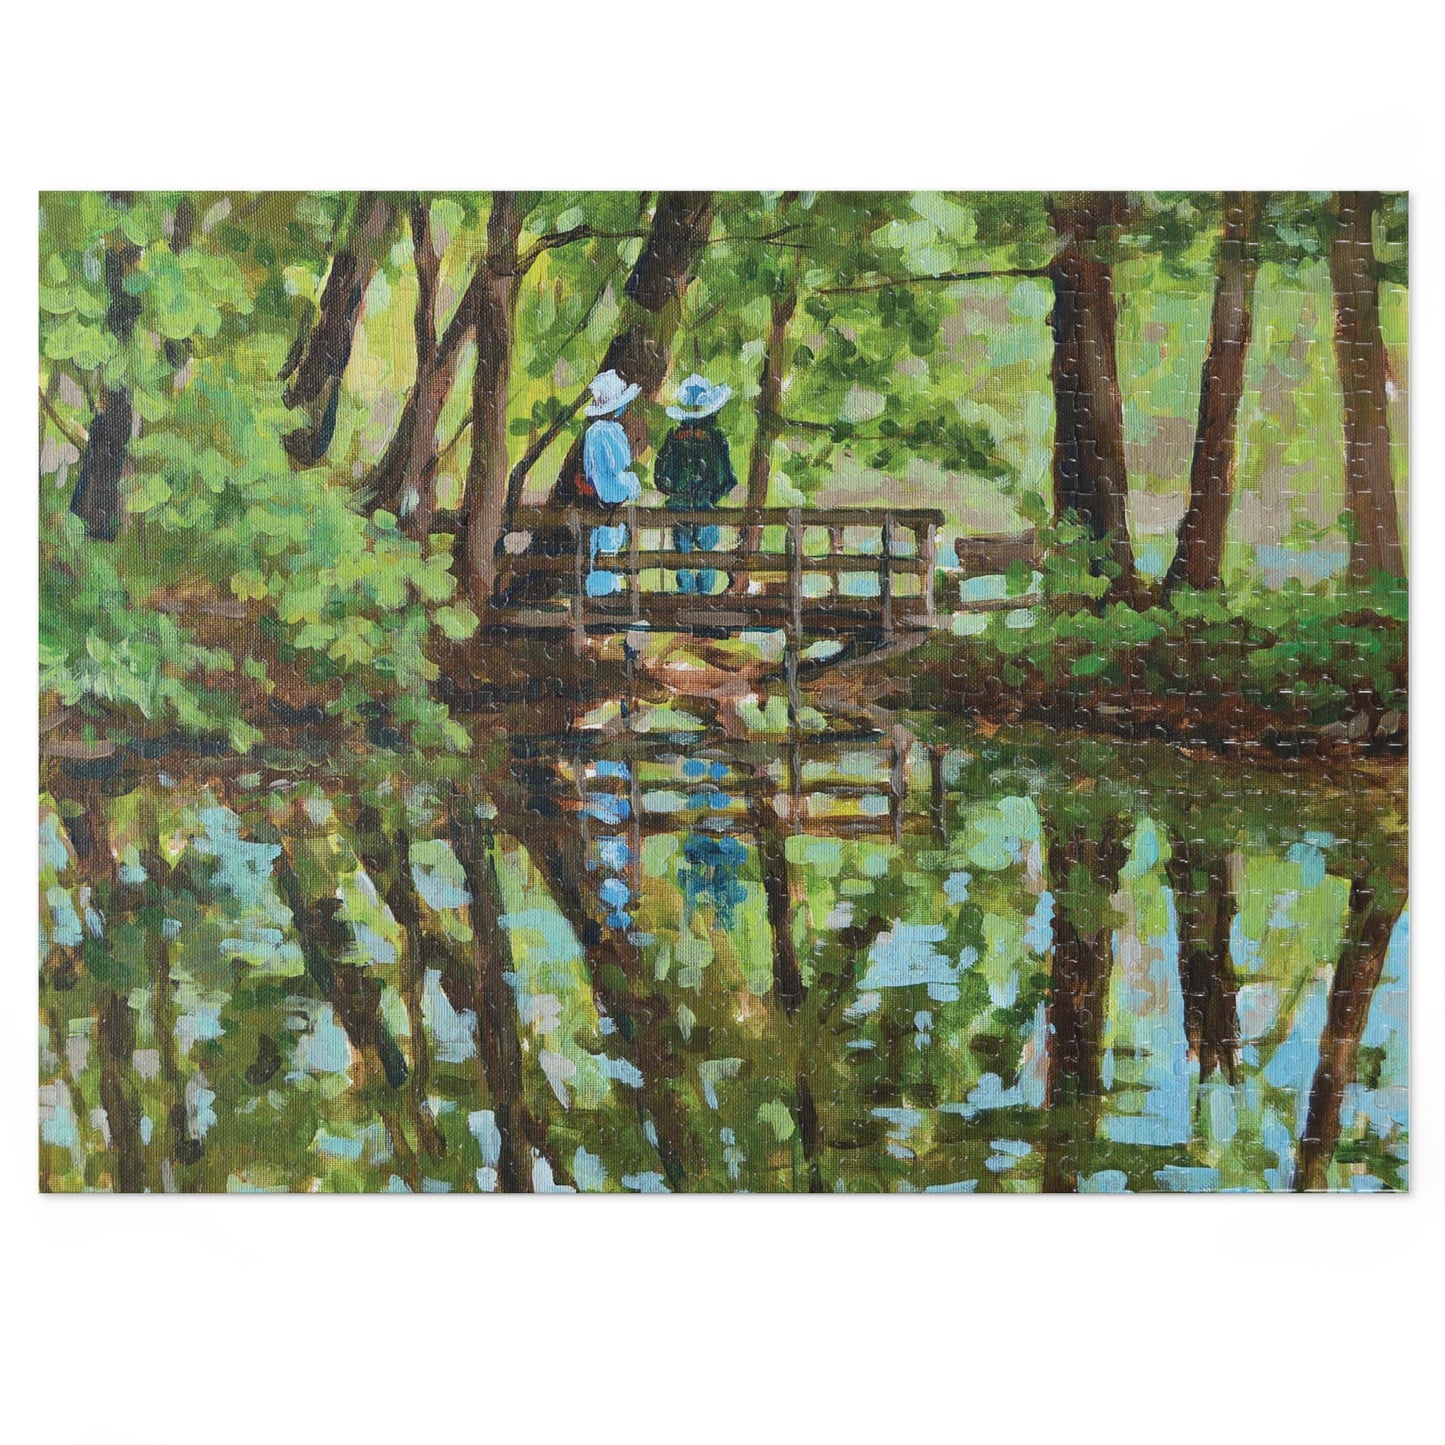 Jigsaw Puzzle - I Like Monet